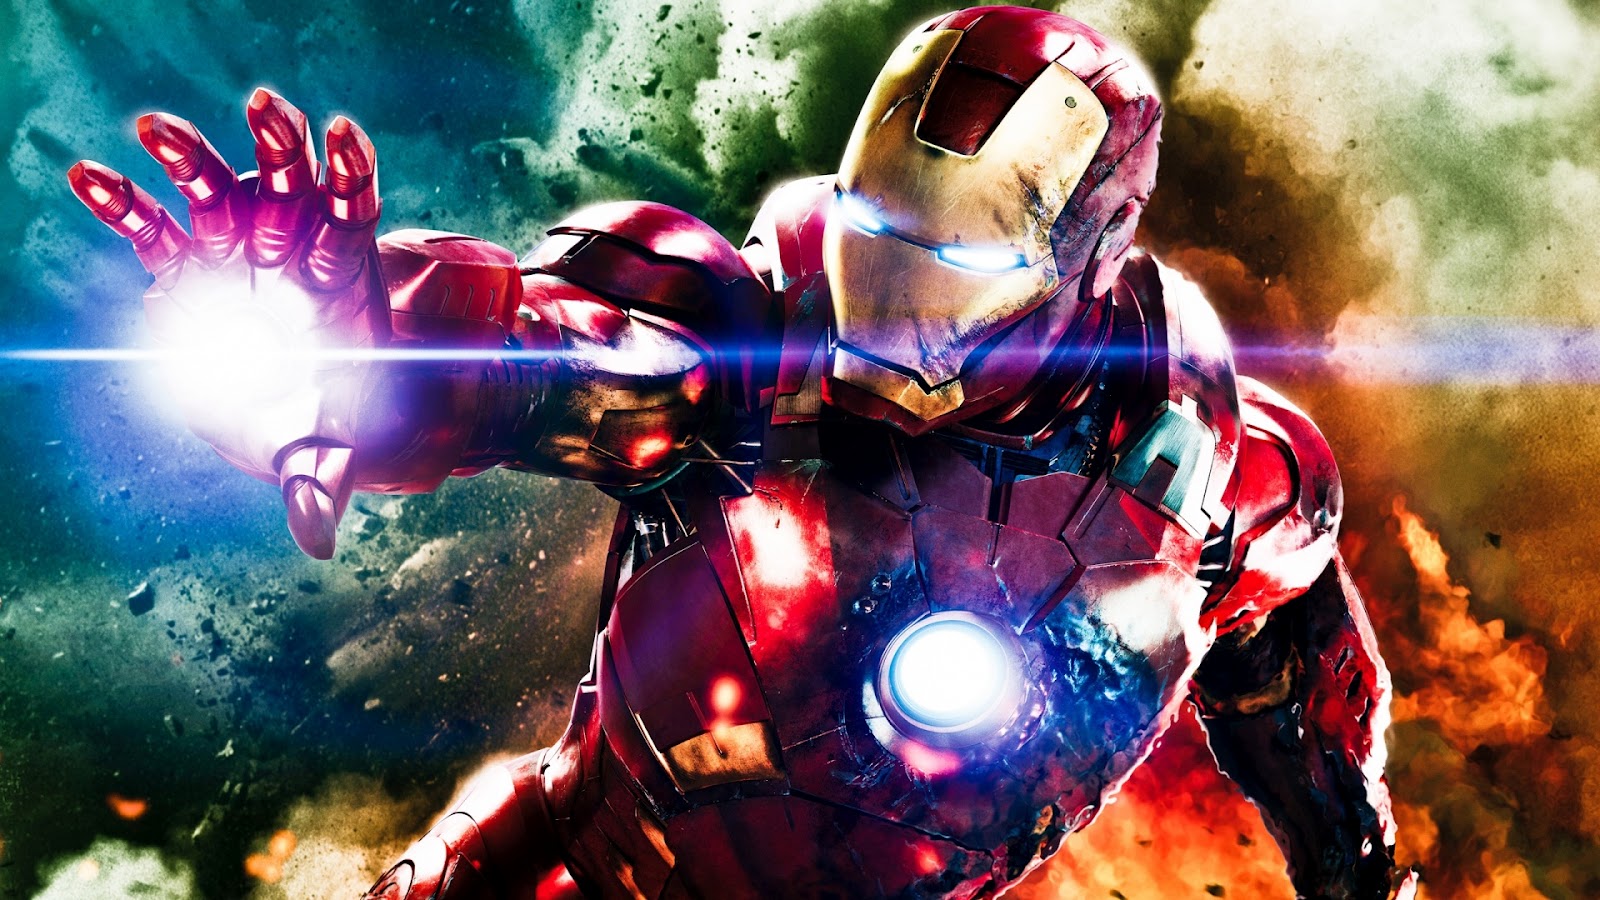 iron man wallpaper hd 1080p,gioco di avventura e azione,uomo di ferro,supereroe,personaggio fittizio,cg artwork